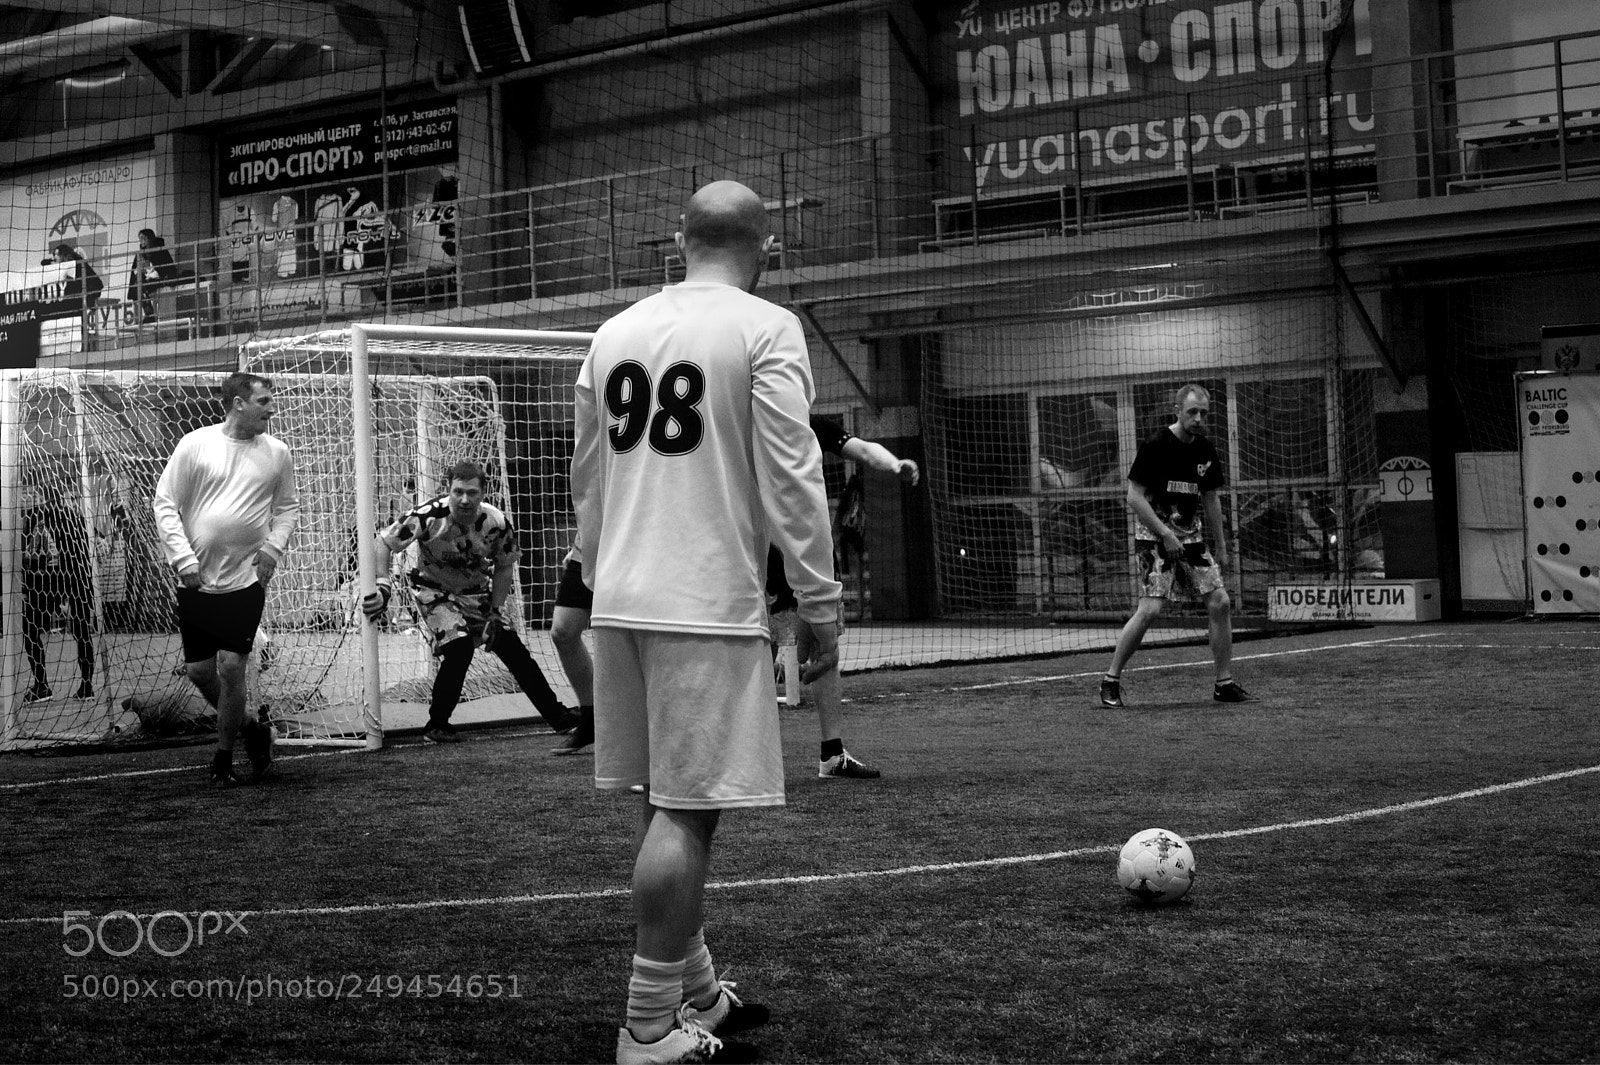 Sony Alpha DSLR-A450 sample photo. Football duel photography